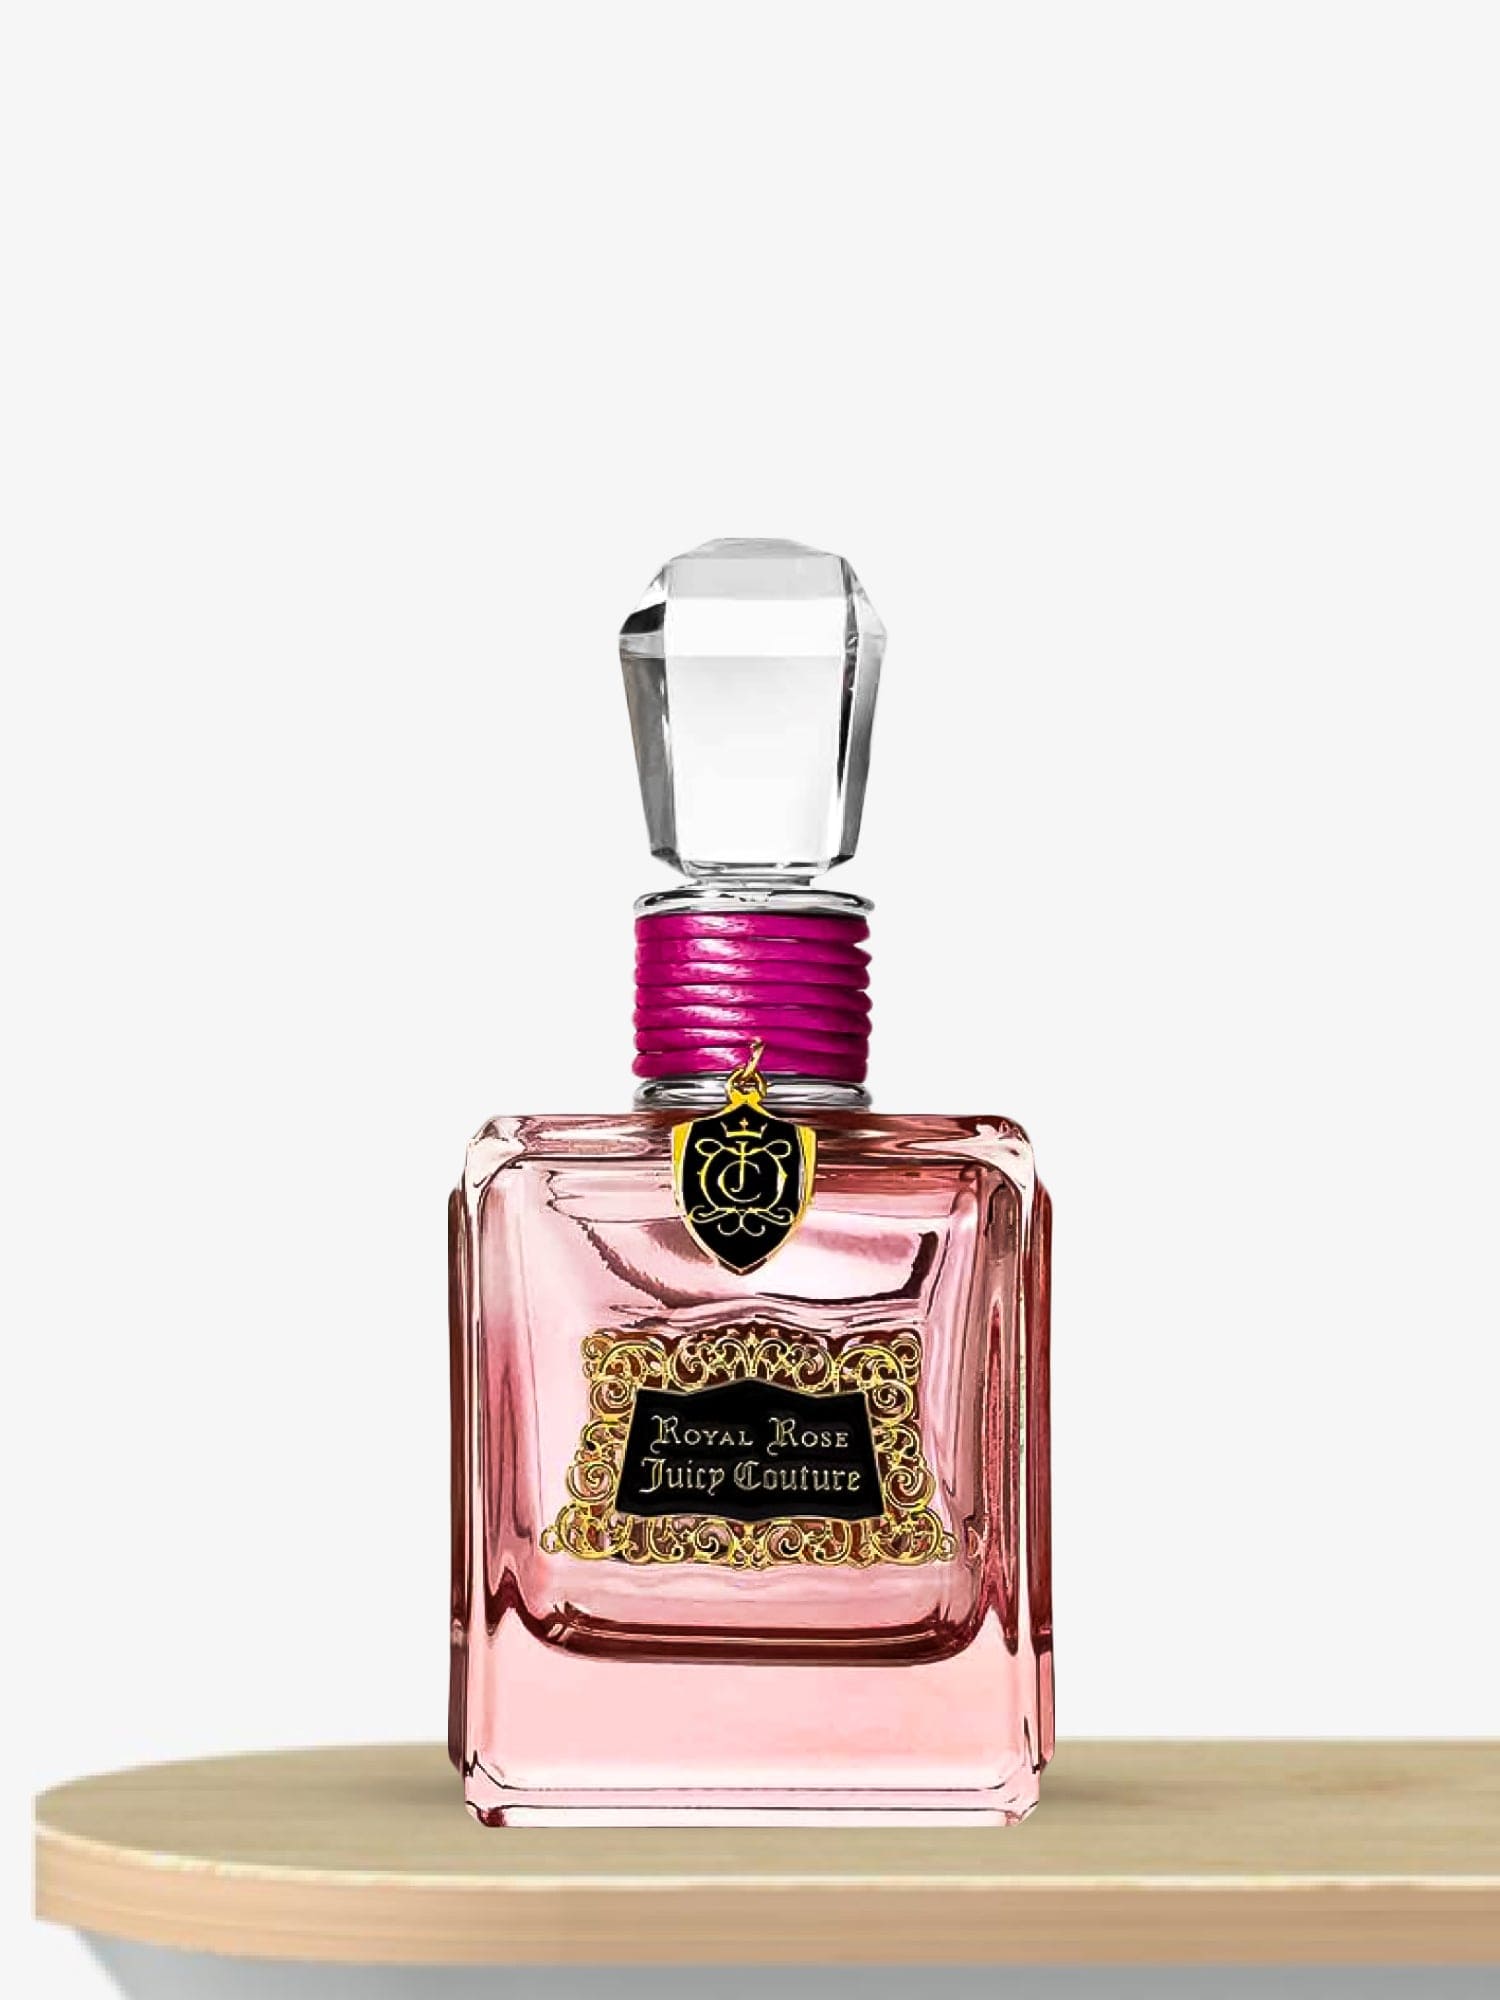 Juicy Couture Royal Rose Eau de Parfum 100 mL / Female